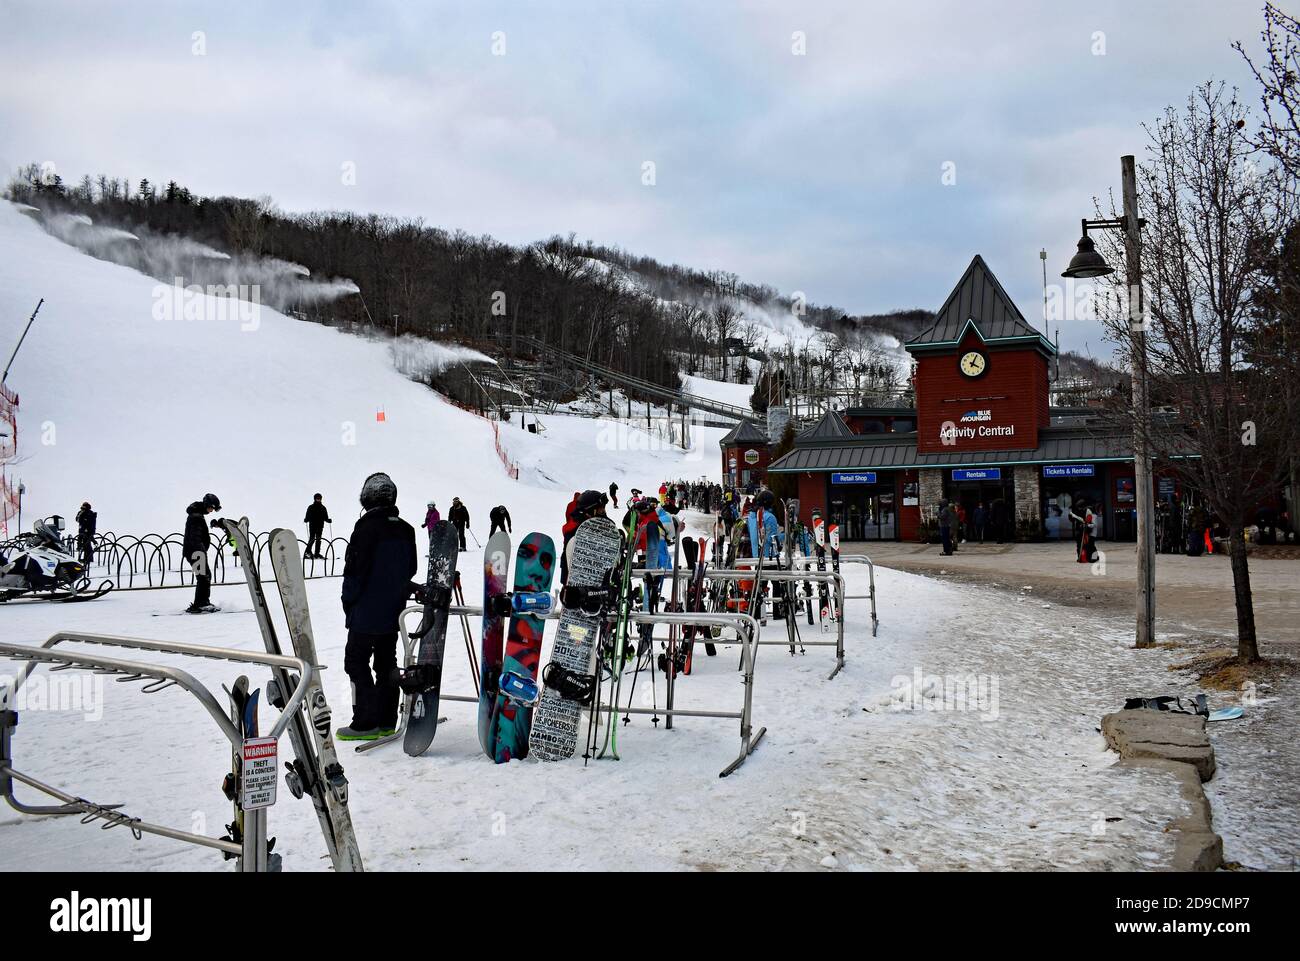 Il centro attività presso il Blue Mountain Resort, Canada. Le tavole da neve vengono riposte contro ringhiere metalliche. Si possono vedere piste da sci con macchine da neve. Foto Stock